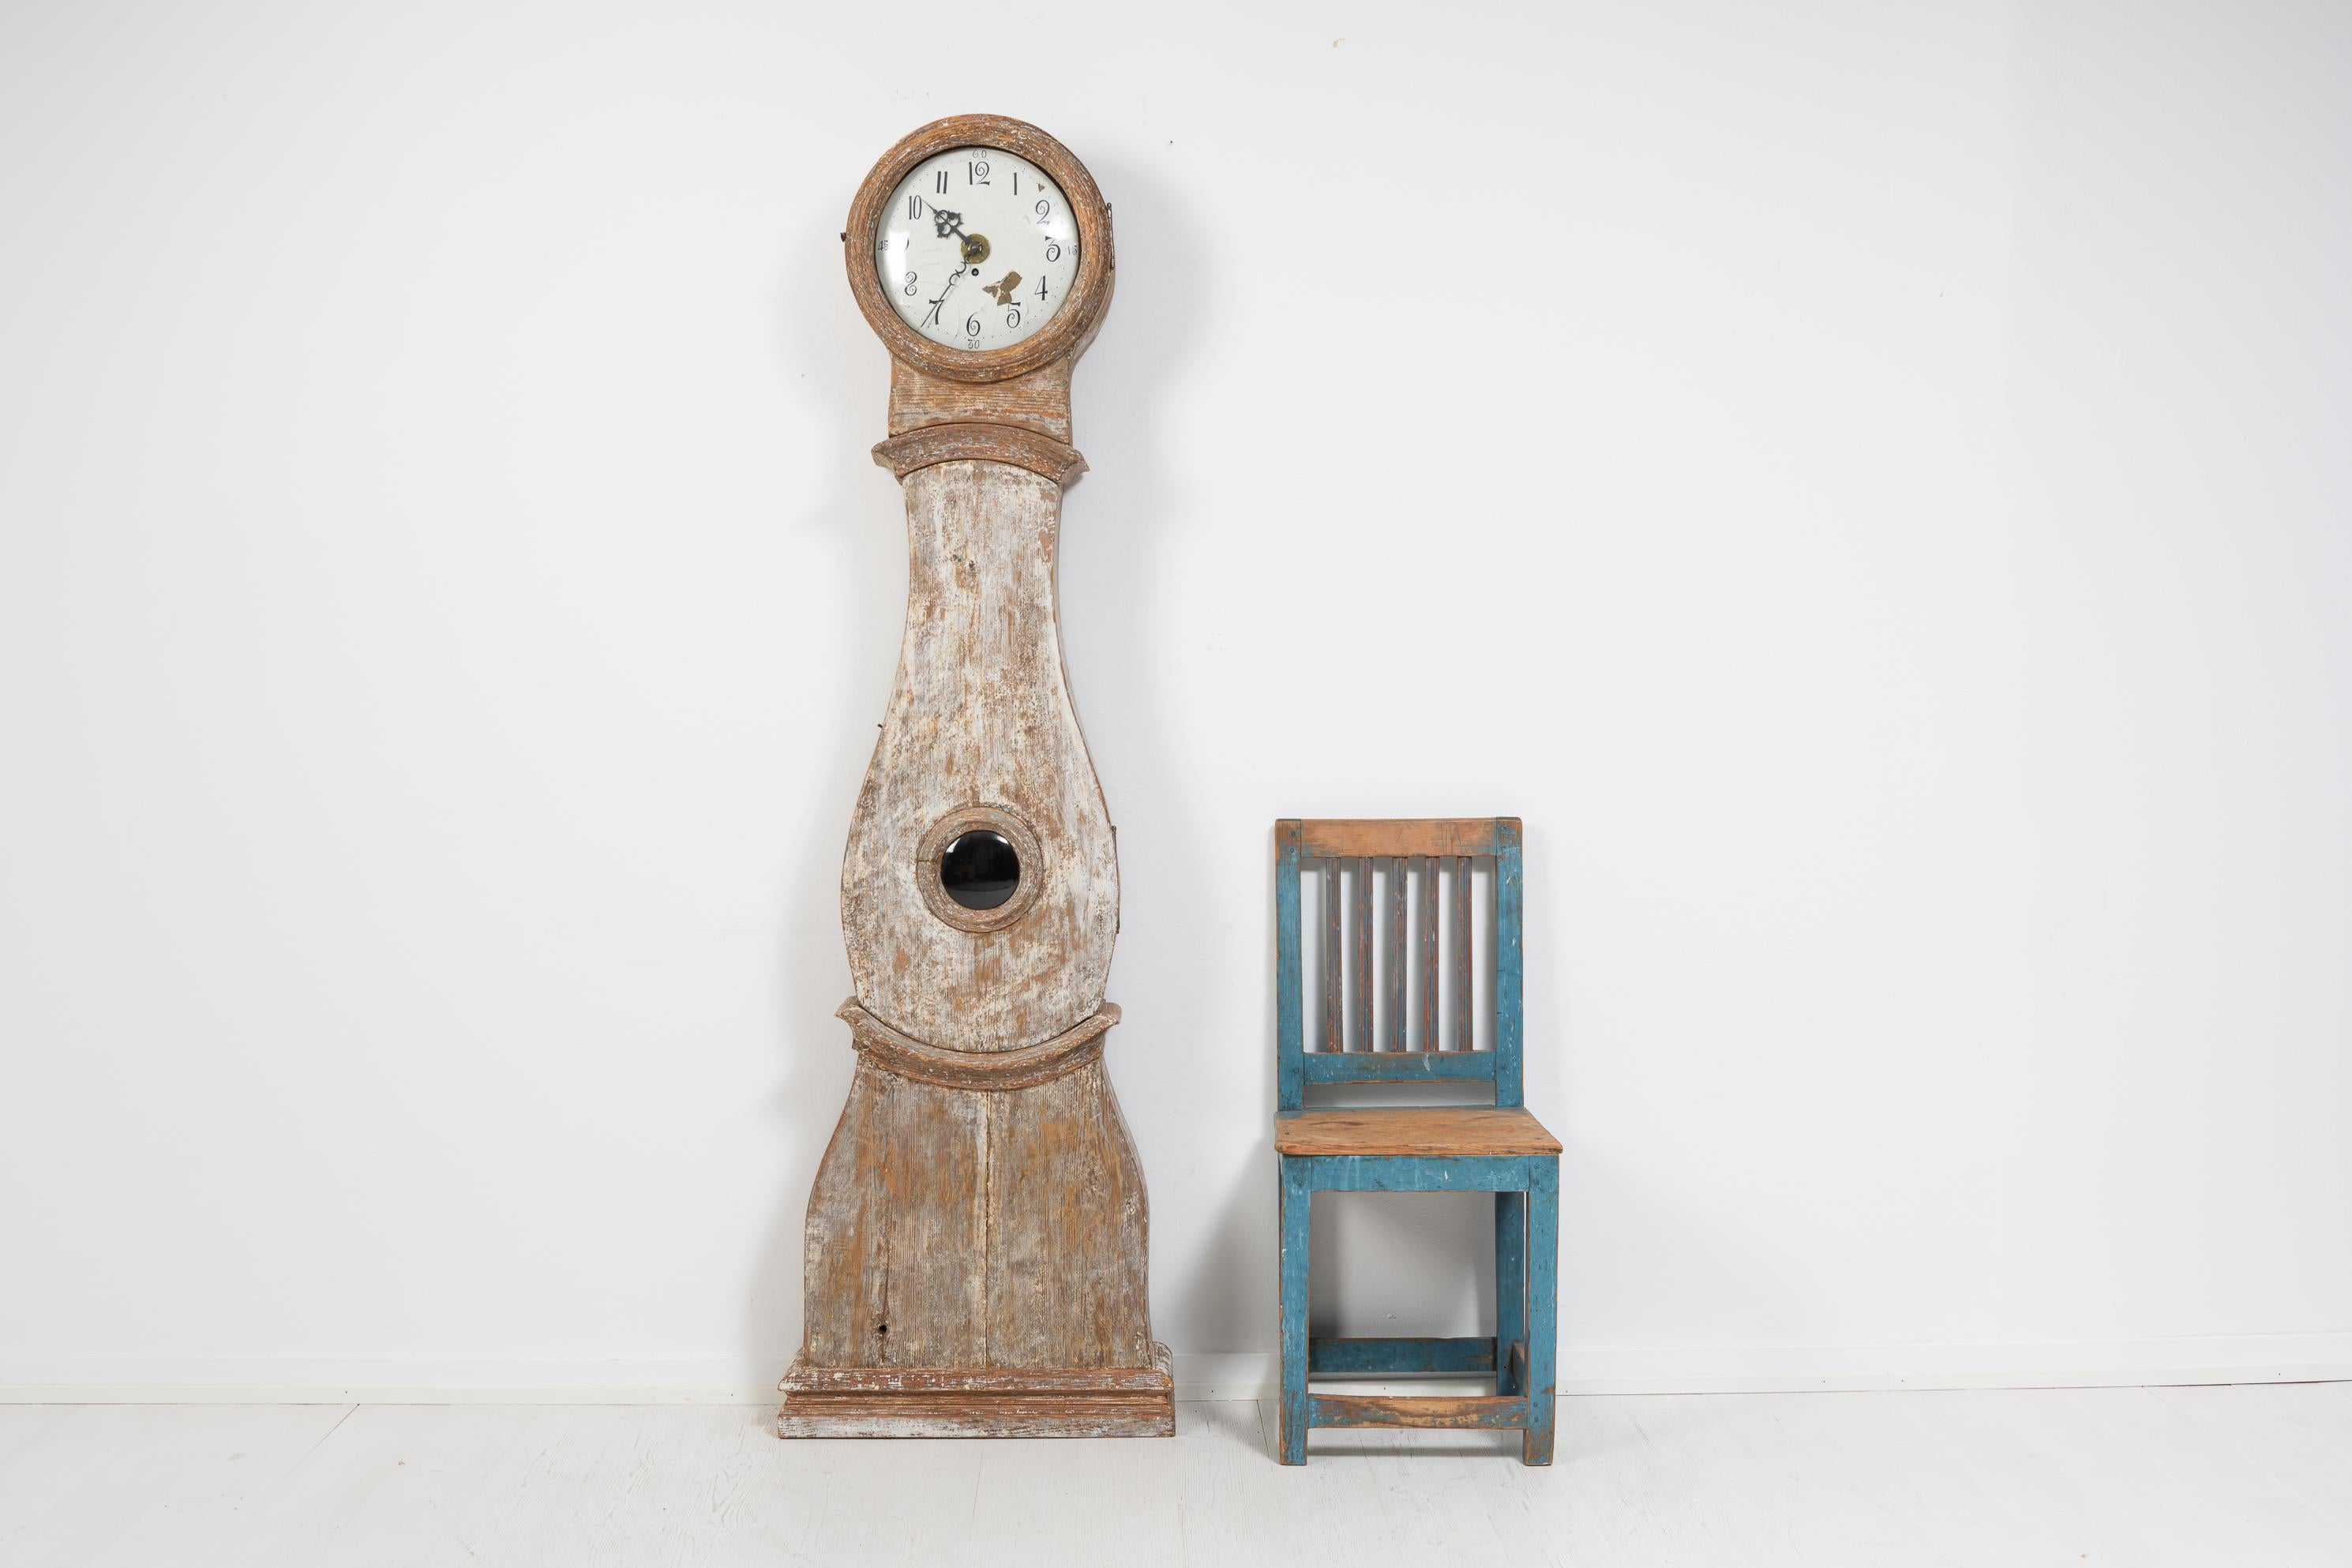 Pendule classique à long boîtier de style rococo de Suède, fabriquée entre le début et le milieu du 19e siècle, de 1820 à 1840. L'horloge est en pin peint et a été grattée à sec à la main jusqu'à la couche de peinture actuelle.

L'horloge est